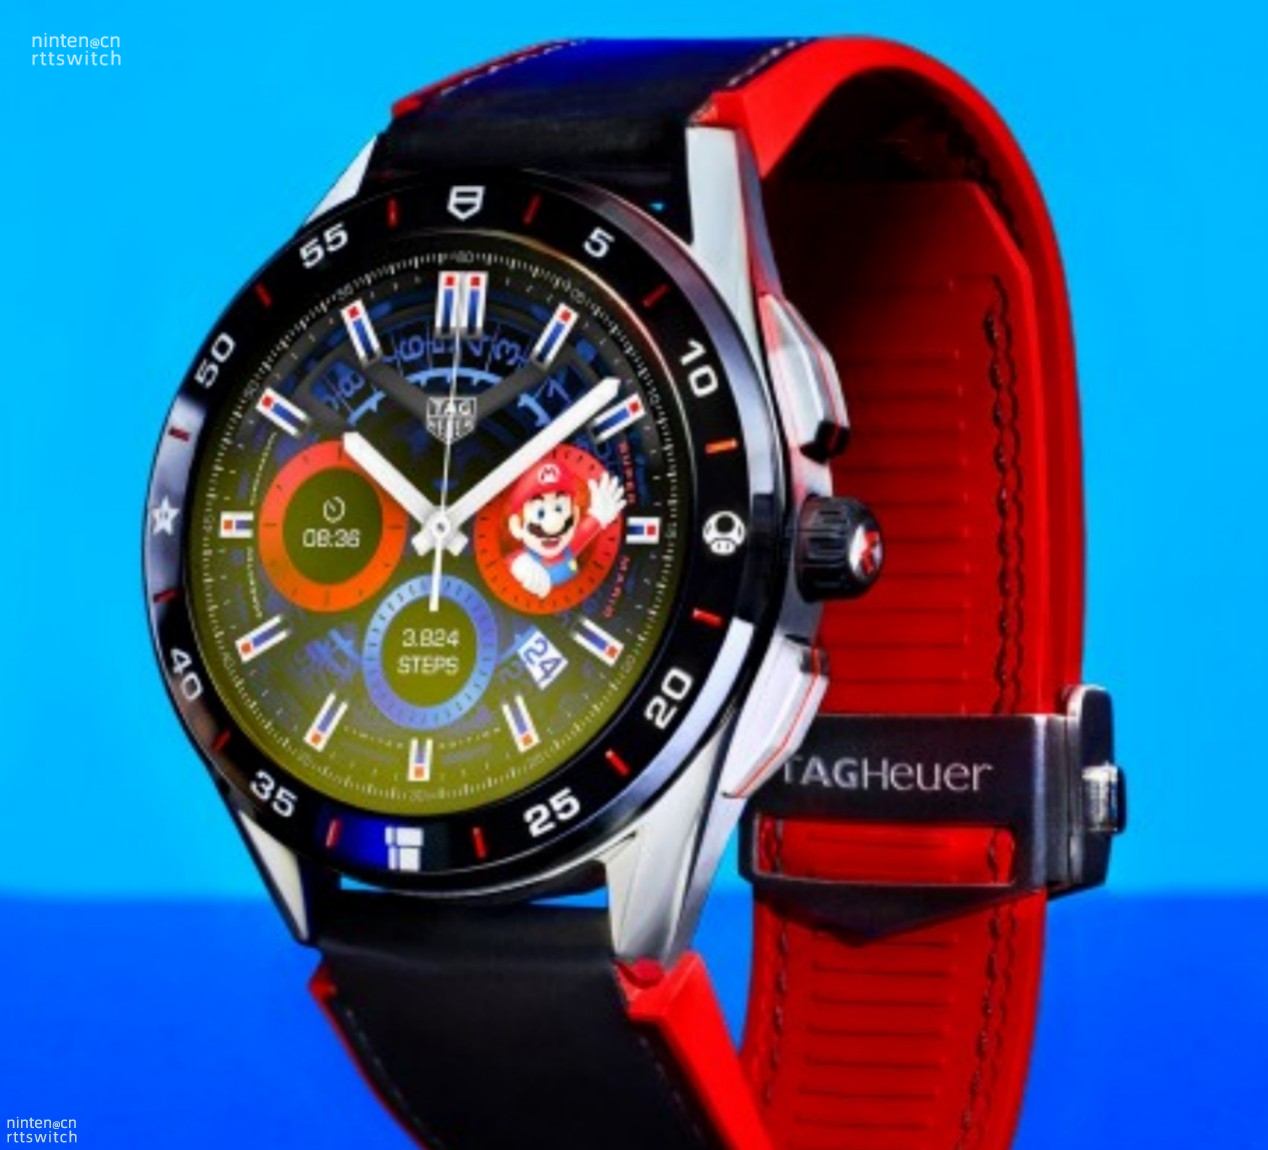 泰格豪雅推出马里奥联动主题款运动手表